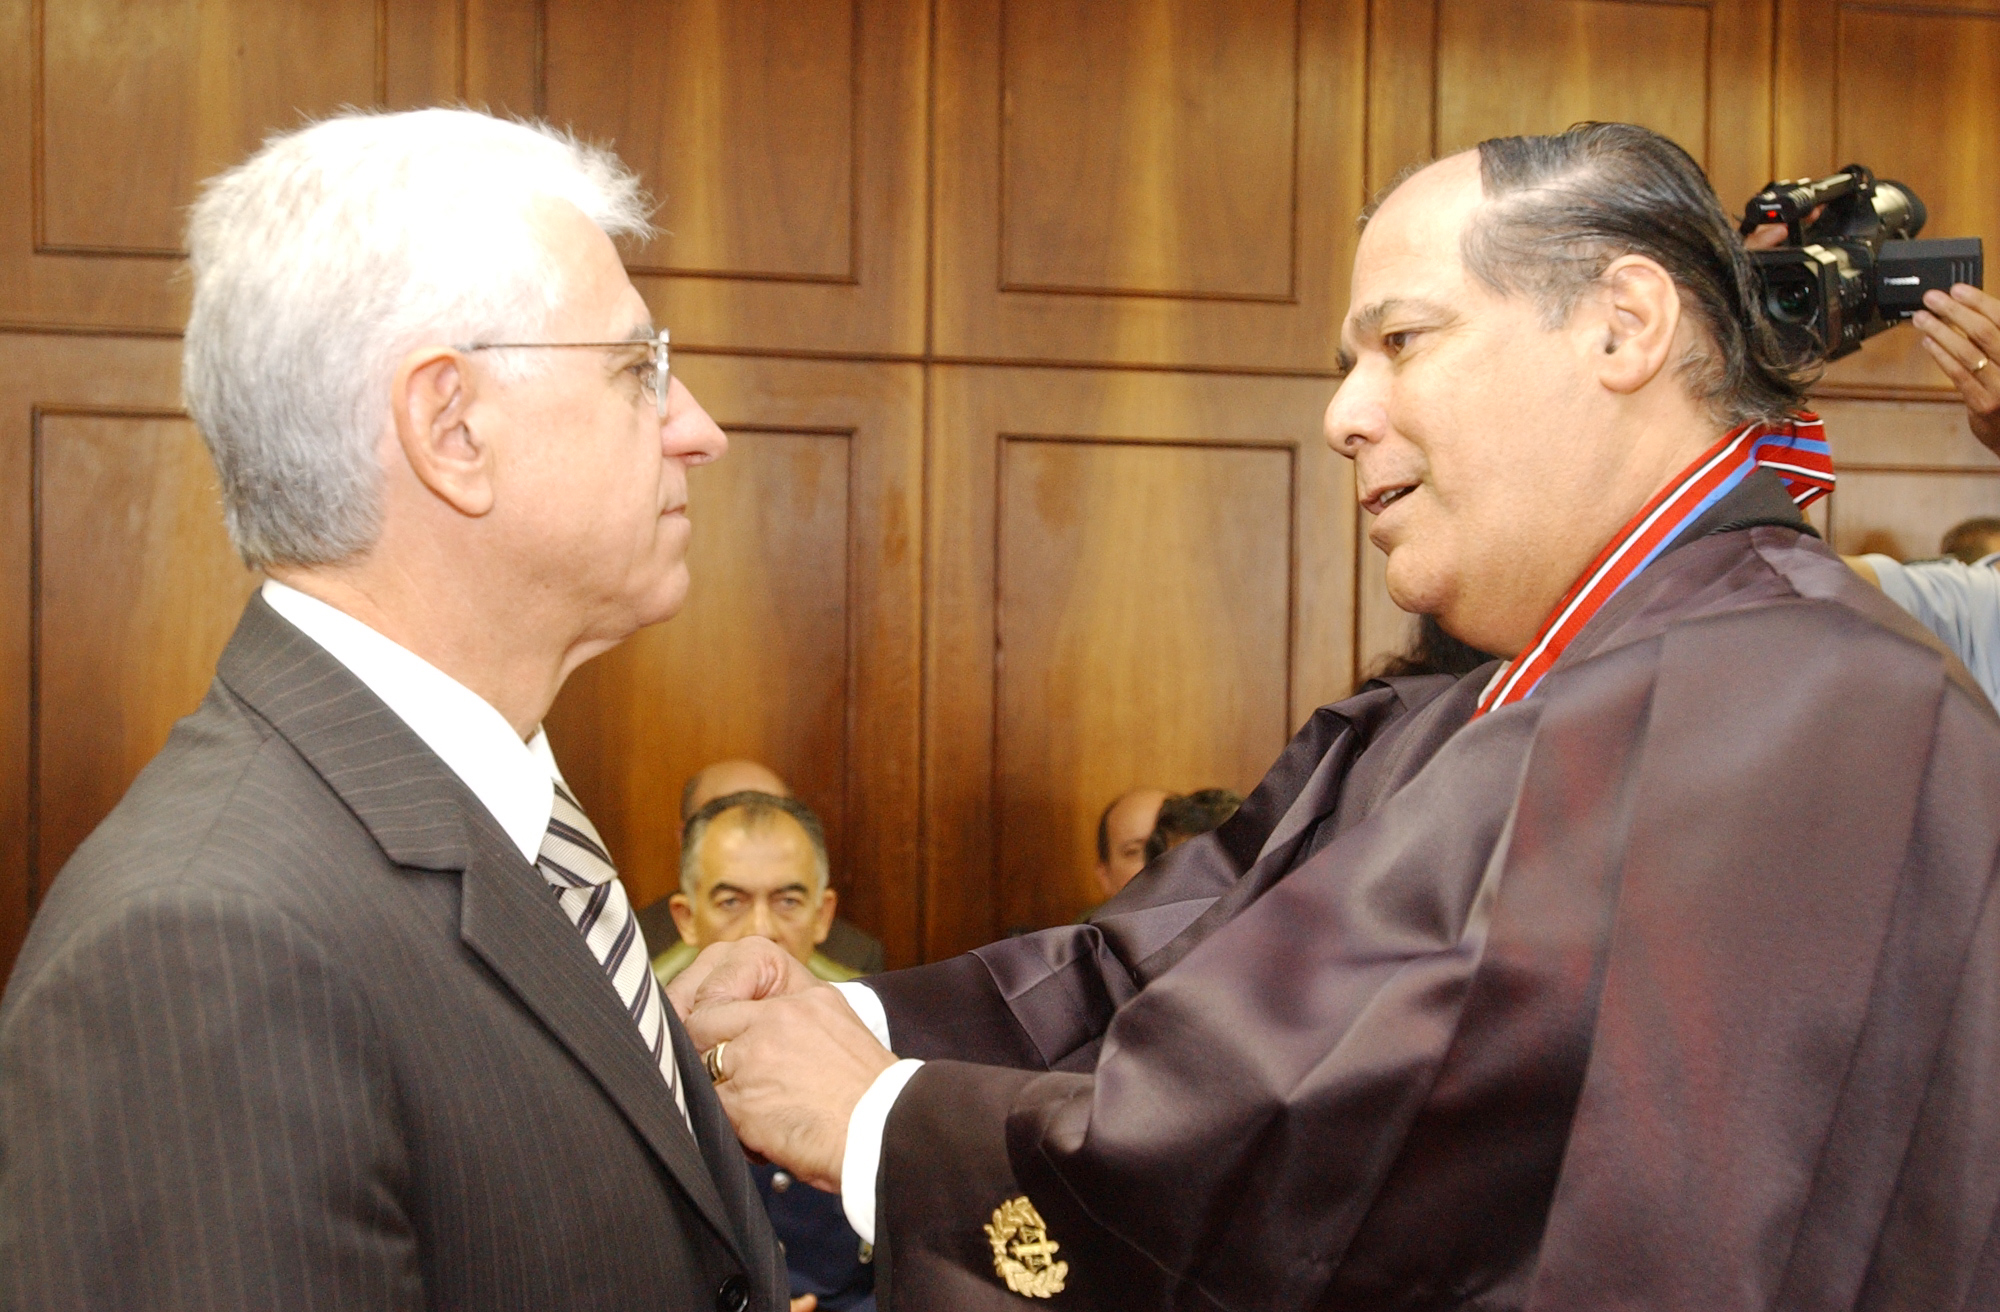 Deputado Sidney Beraldo, presidente da Assemblia Legislativa recebe Medalha do Mrito Judicirio Militar Paulista<a style='float:right;color:#ccc' href='https://www3.al.sp.gov.br/repositorio/noticia/hist/tjmA2302.jpg' target=_blank><i class='bi bi-zoom-in'></i> Clique para ver a imagem </a>